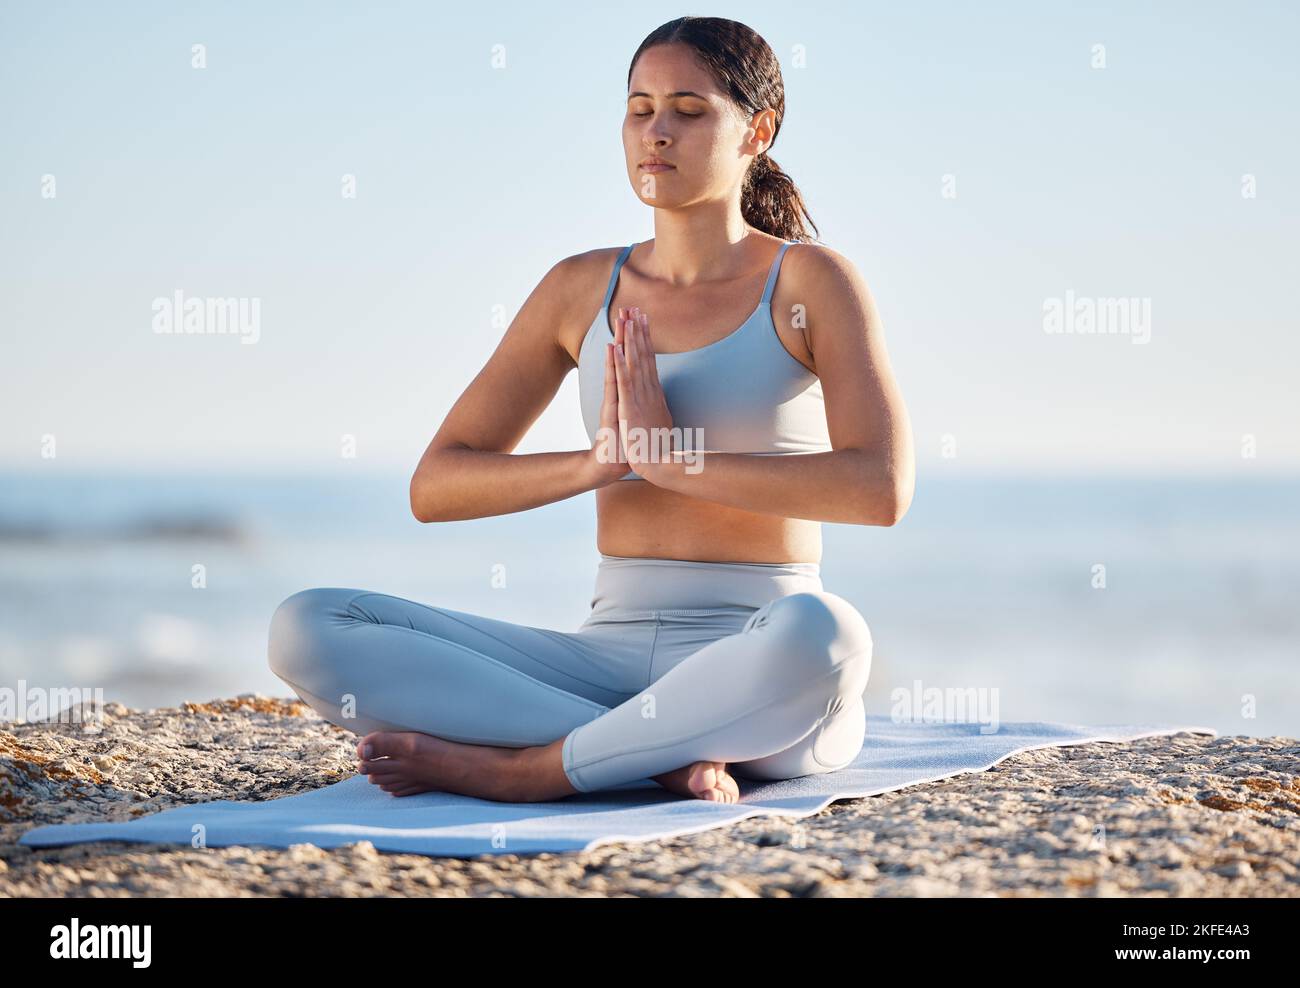 Femme, yoga et plage pour la forme physique, la santé et le bien-être avec un exercice de pleine conscience dans un environnement de nature. Mer, pilates et de la forme femelle dans lotus poser sur Banque D'Images